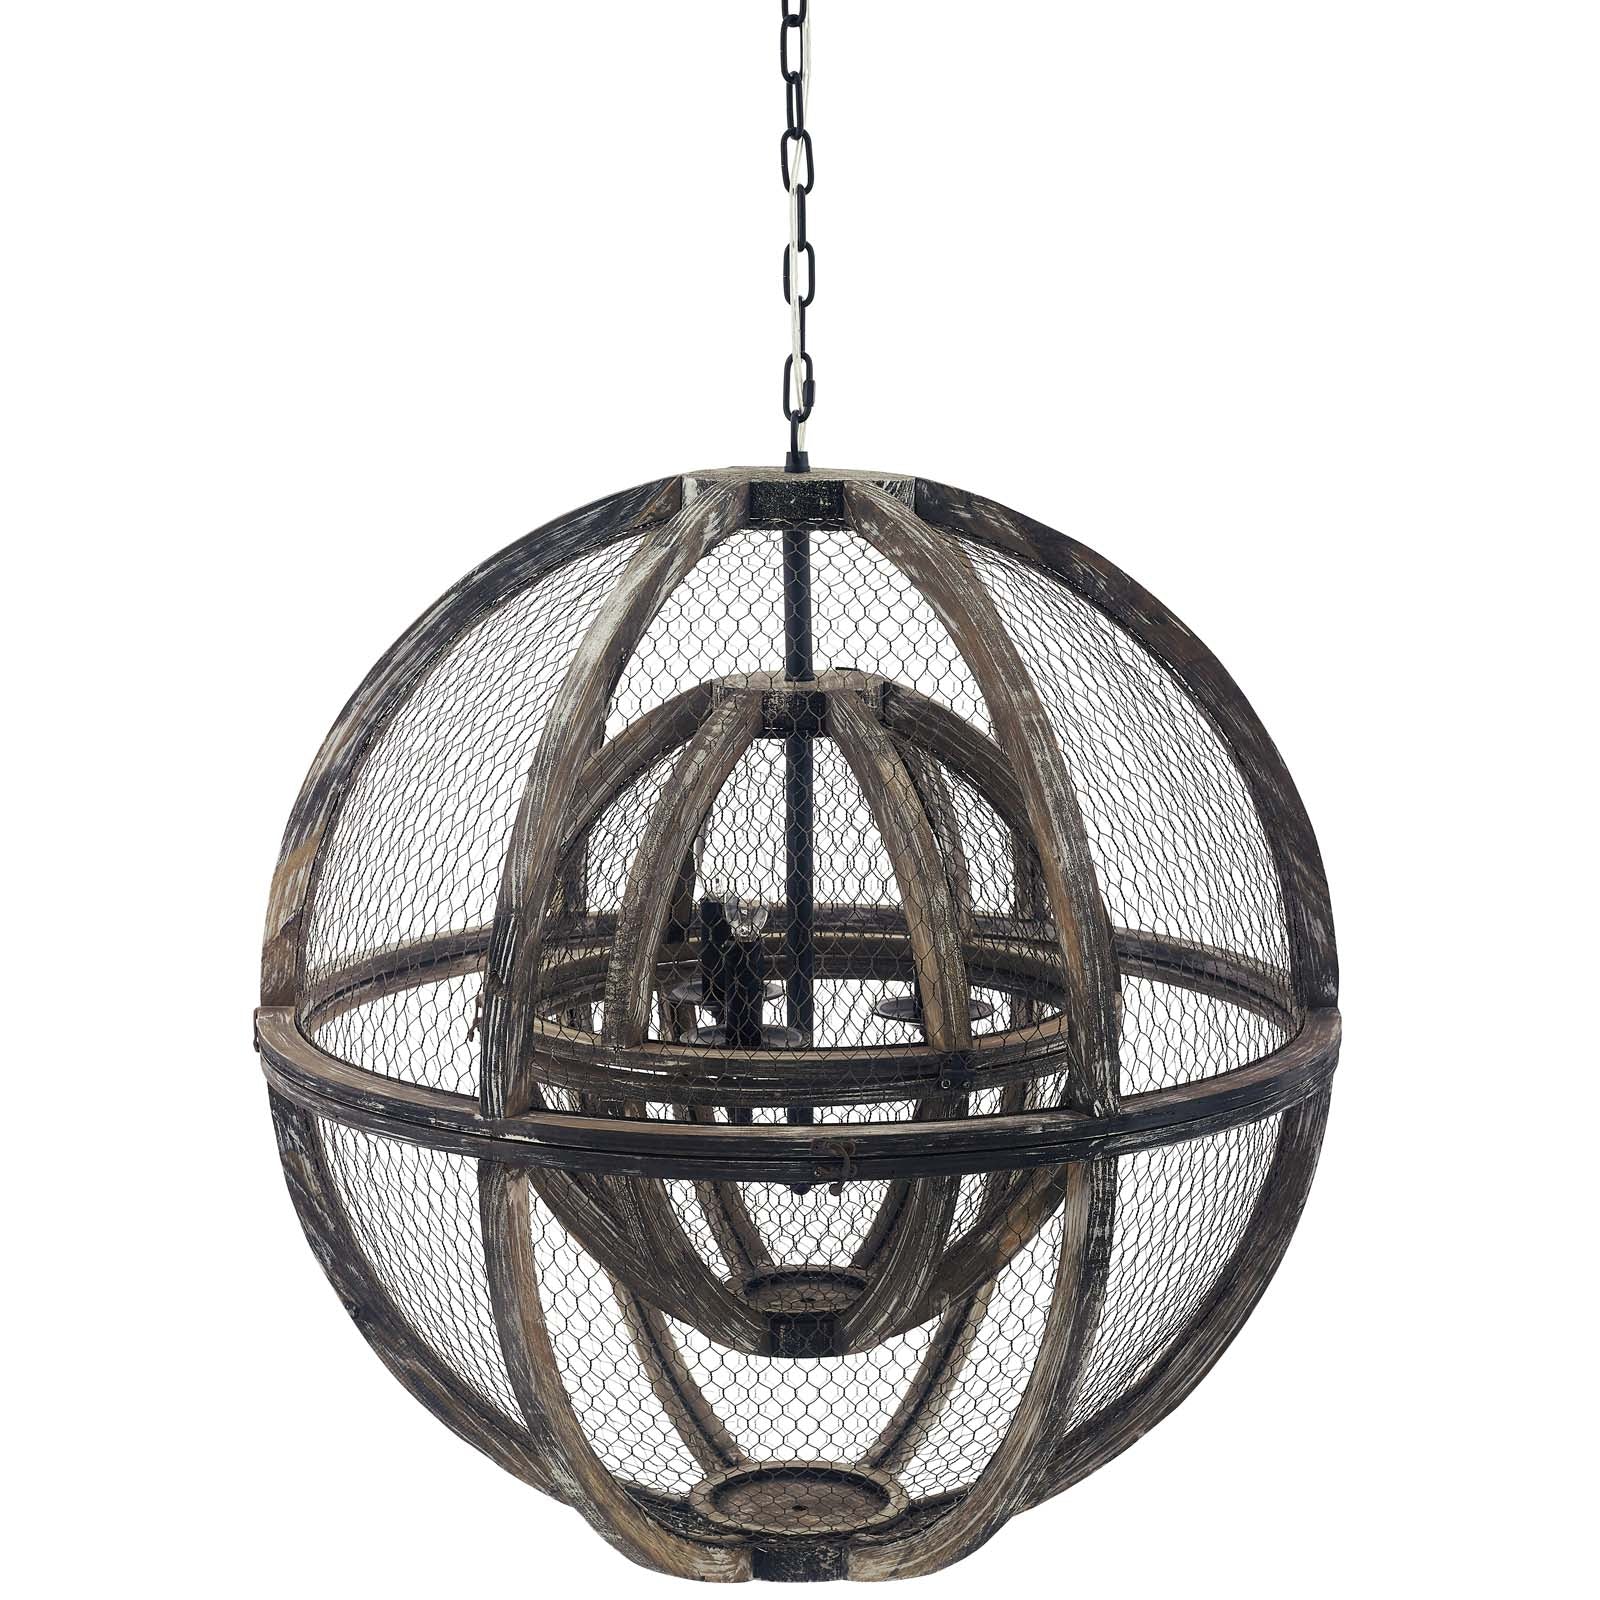 Modway Ceiling Lights - Gravitate Globe Rustic Oak Wood Pendant Light Chandelier Rustic Oak